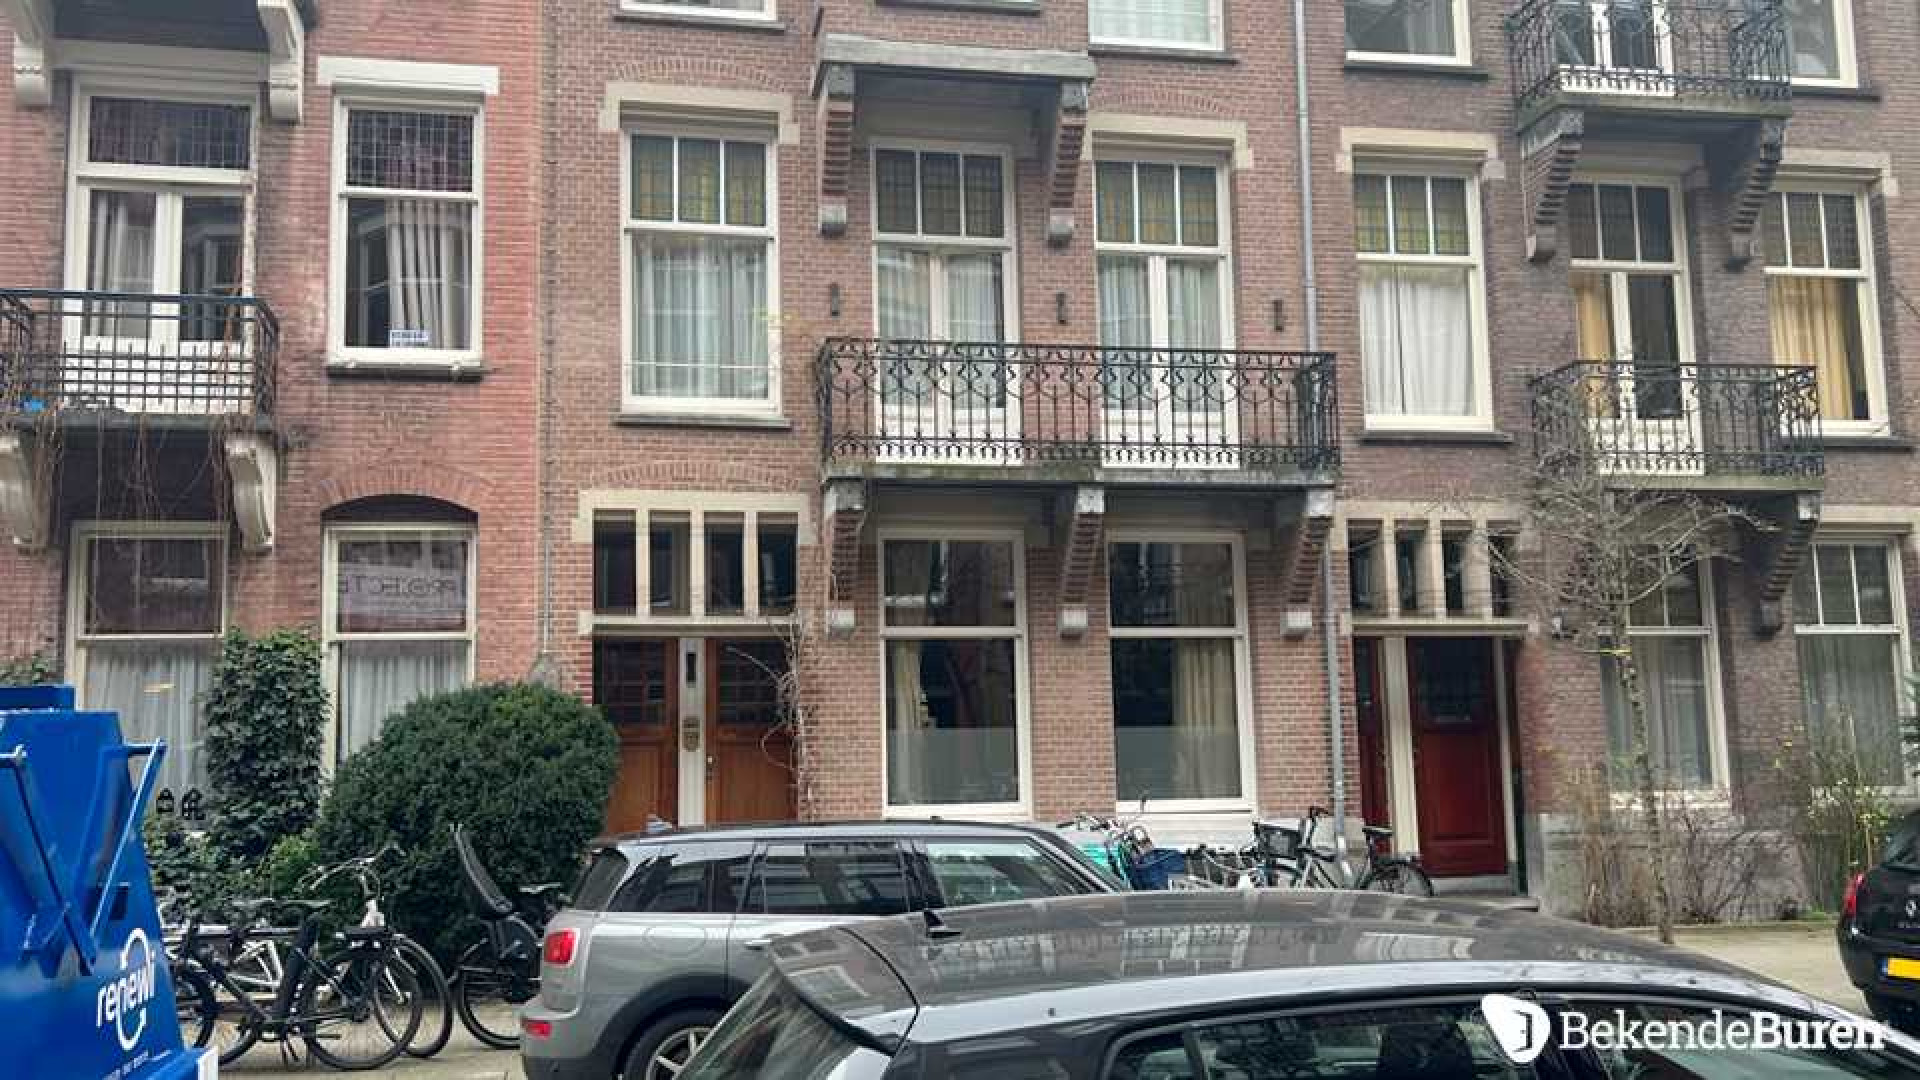 Badr Hari woont in dit bijzondere Amsterdamse huis. Zie foto's 5